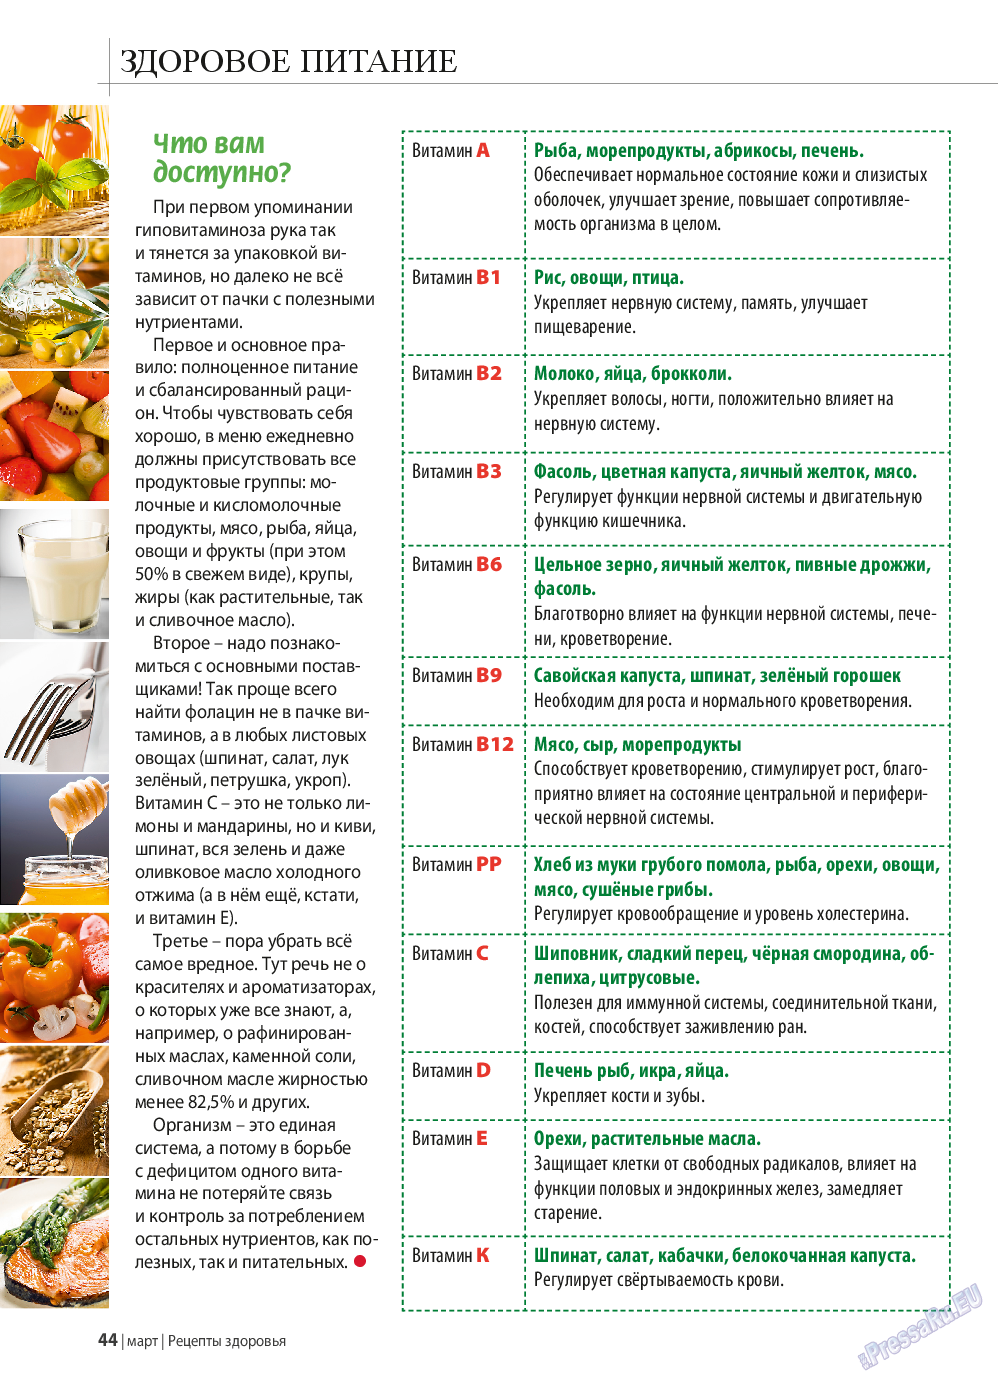 Рецепты здоровья, журнал. 2015 №70 стр.44